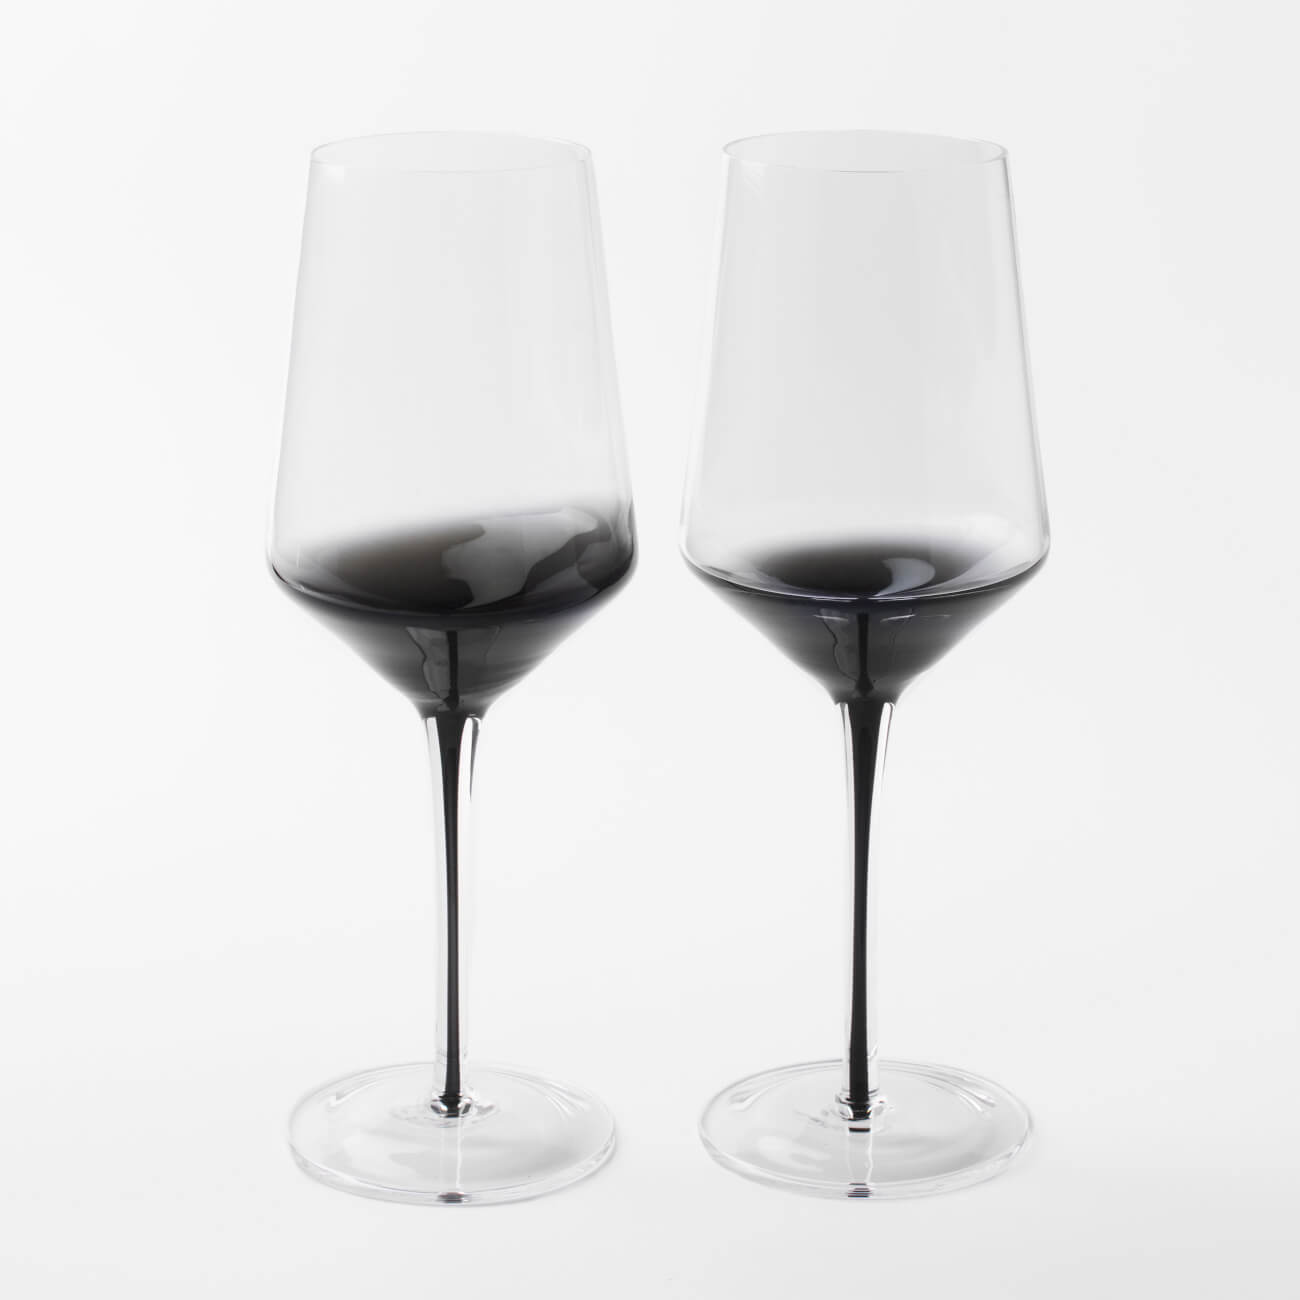 бокал для вина 460 мл 2 шт стекло серый градиент черная ножка stone color Бокал для вина, 460 мл, 2 шт, стекло, серый градиент, черная ножка, Stone color